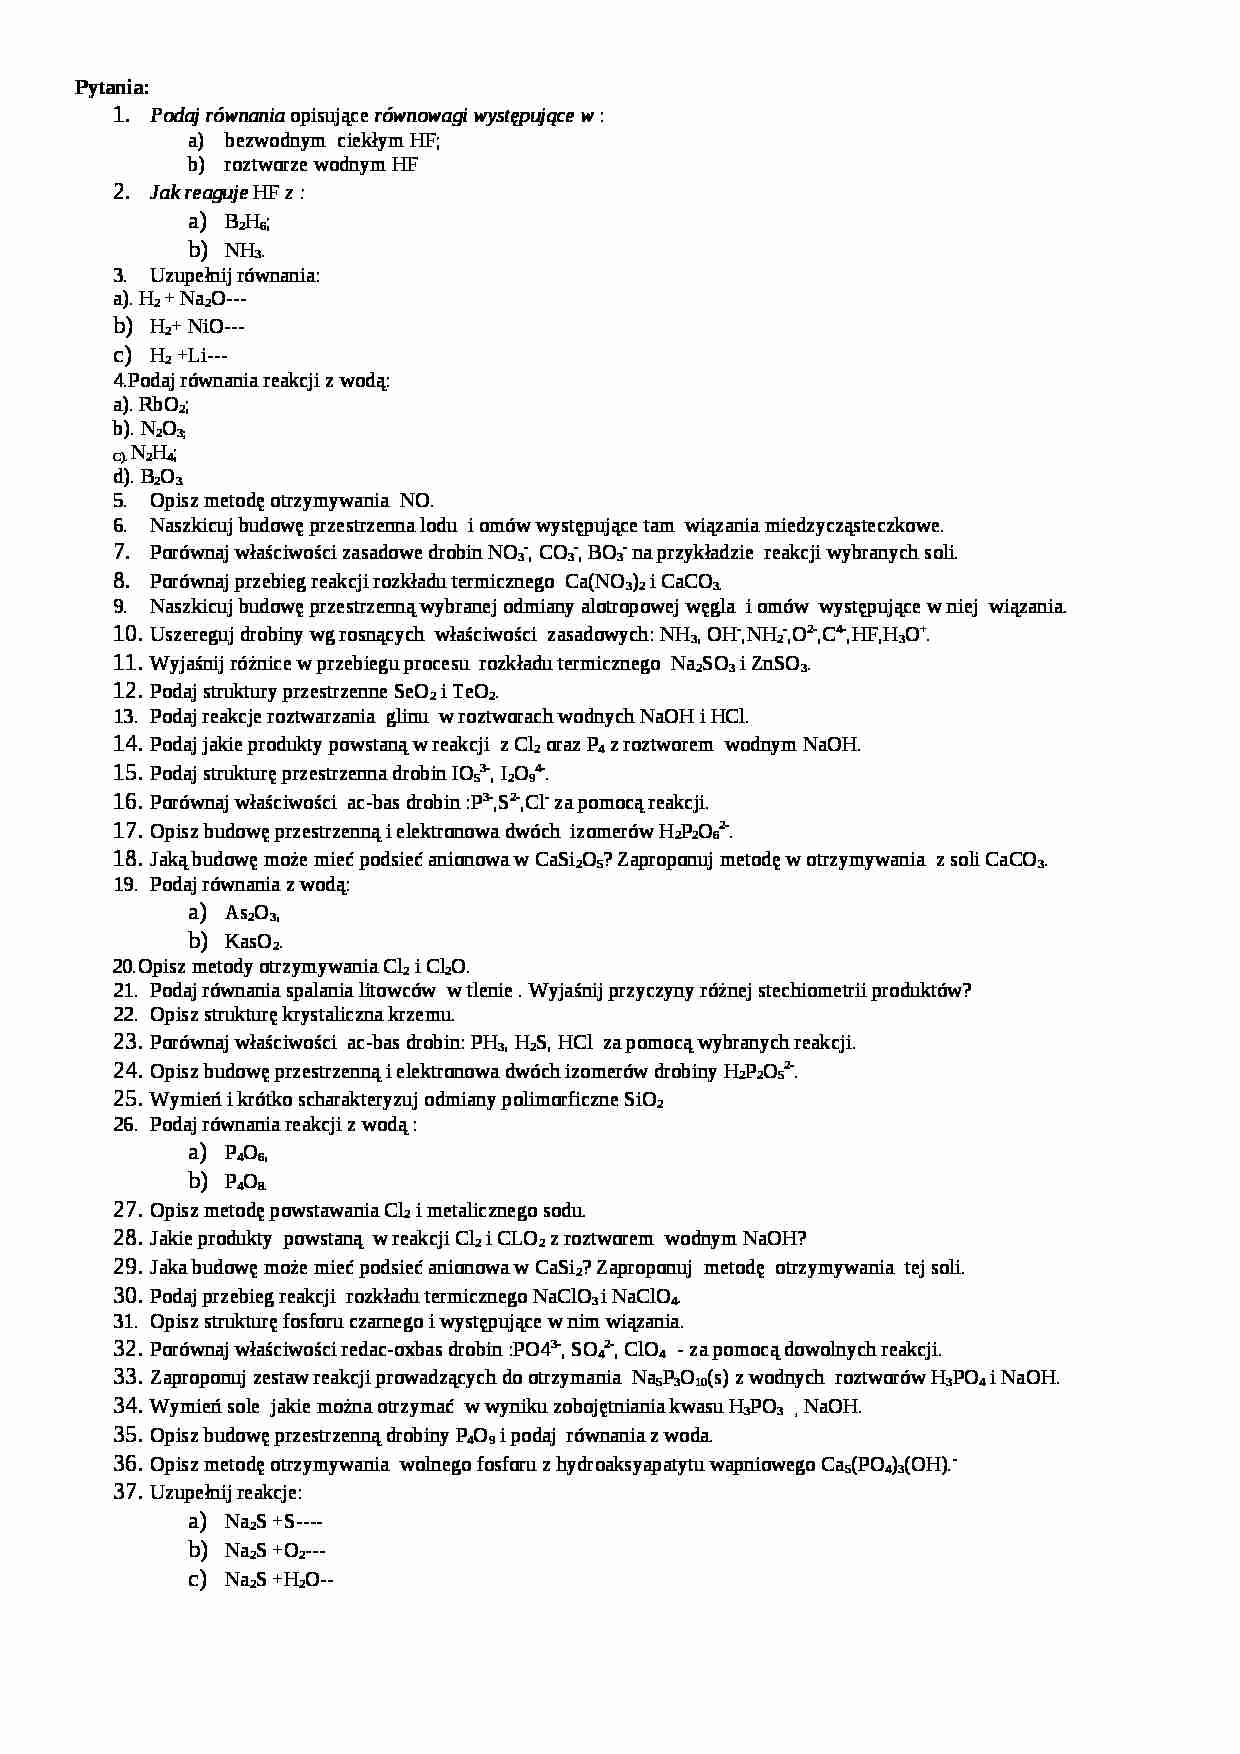 Chemia nieorganiczna - przykładowe pytania na egzamin - strona 1